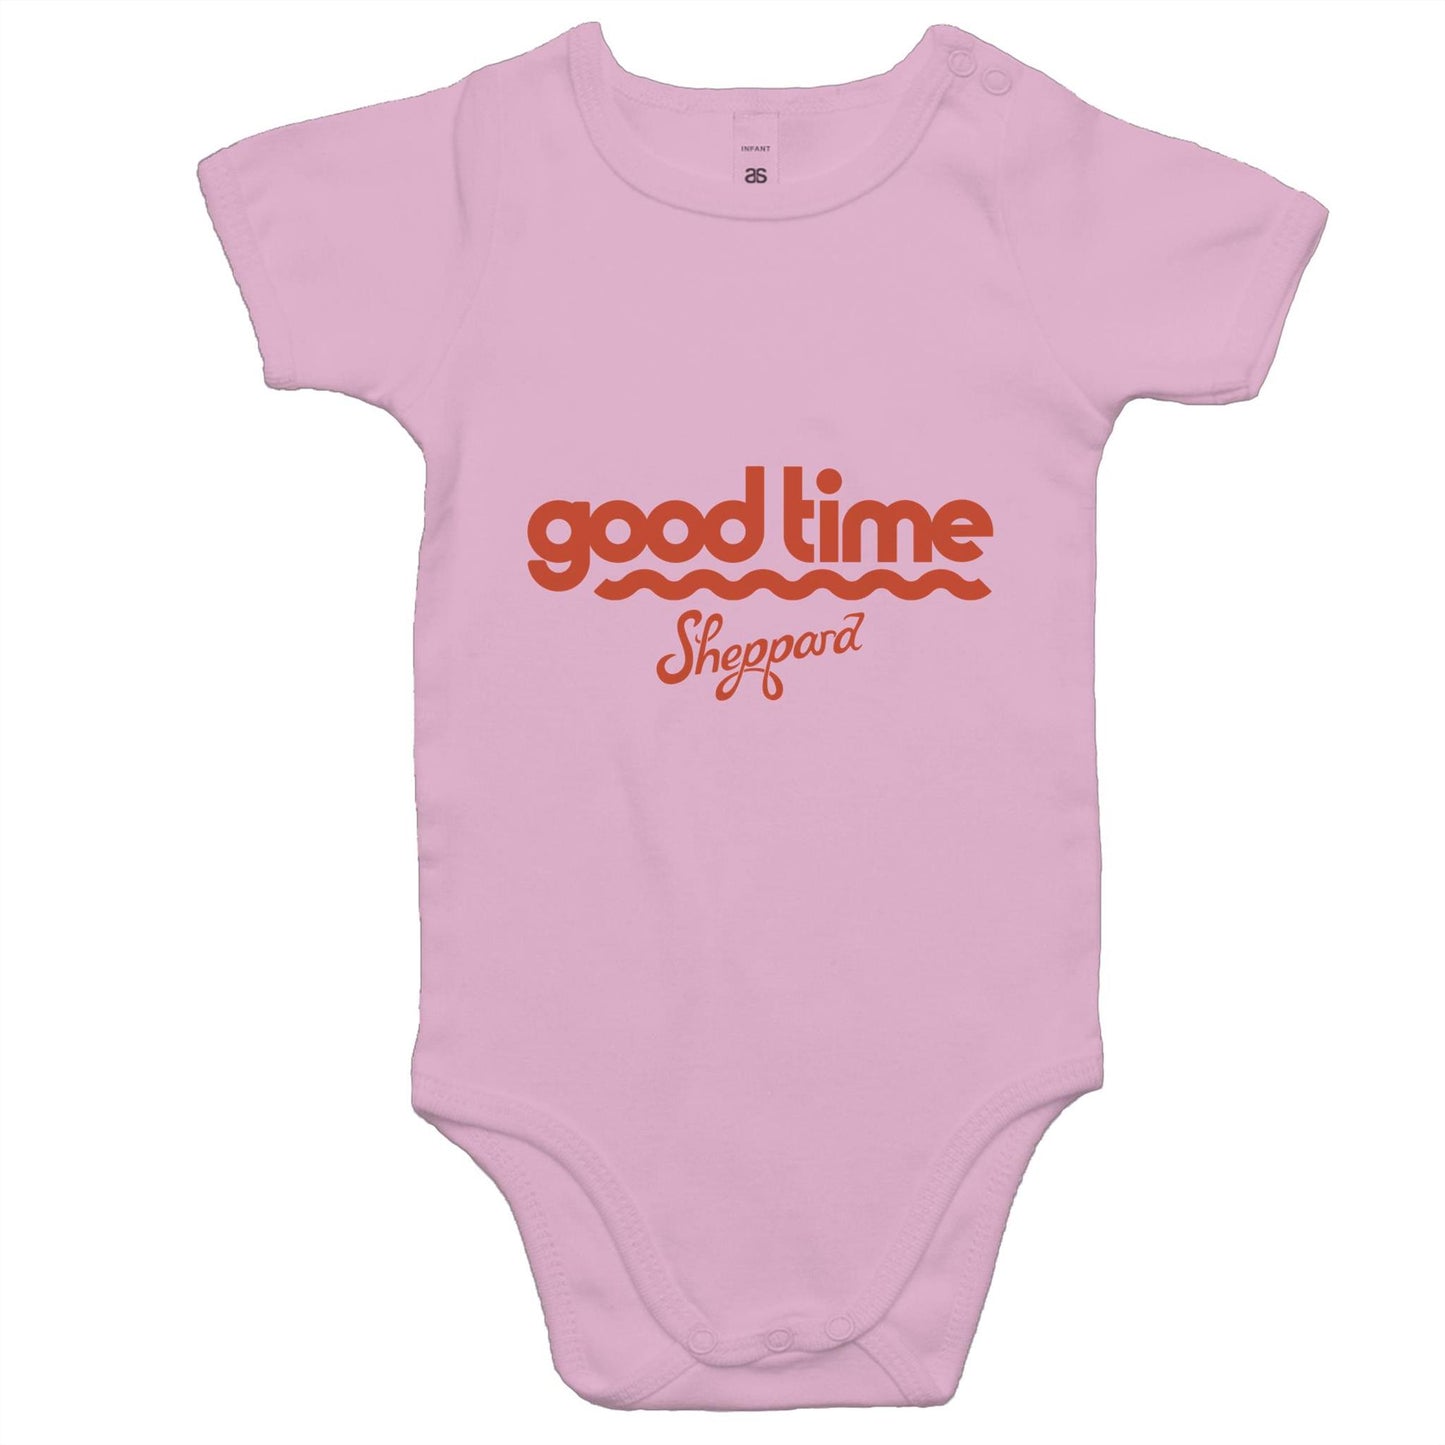 Good Time - Baby Onesie Romper